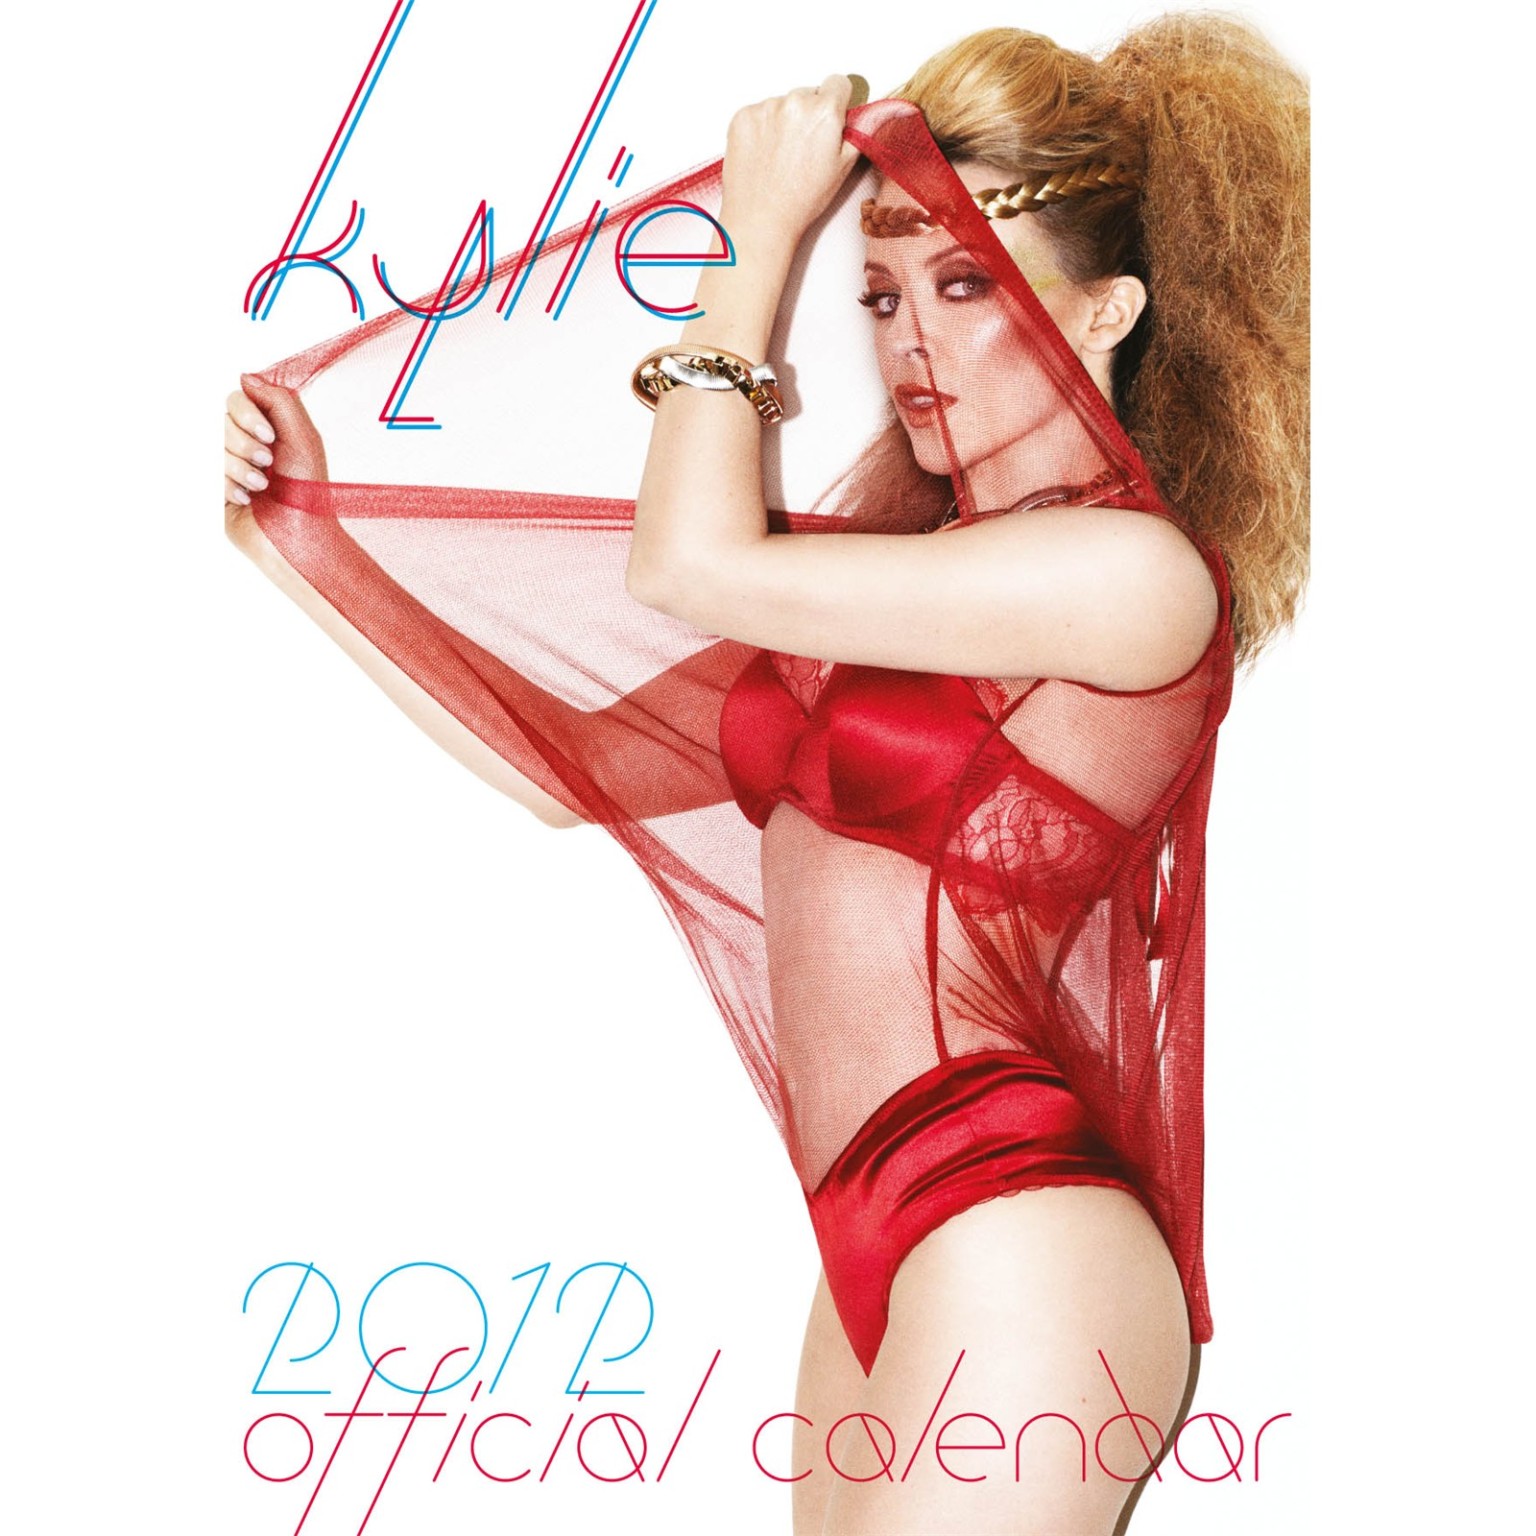 Kylie minogue seins nus mais cachant ses seins pour son calendrier officiel 2012
 #75285363